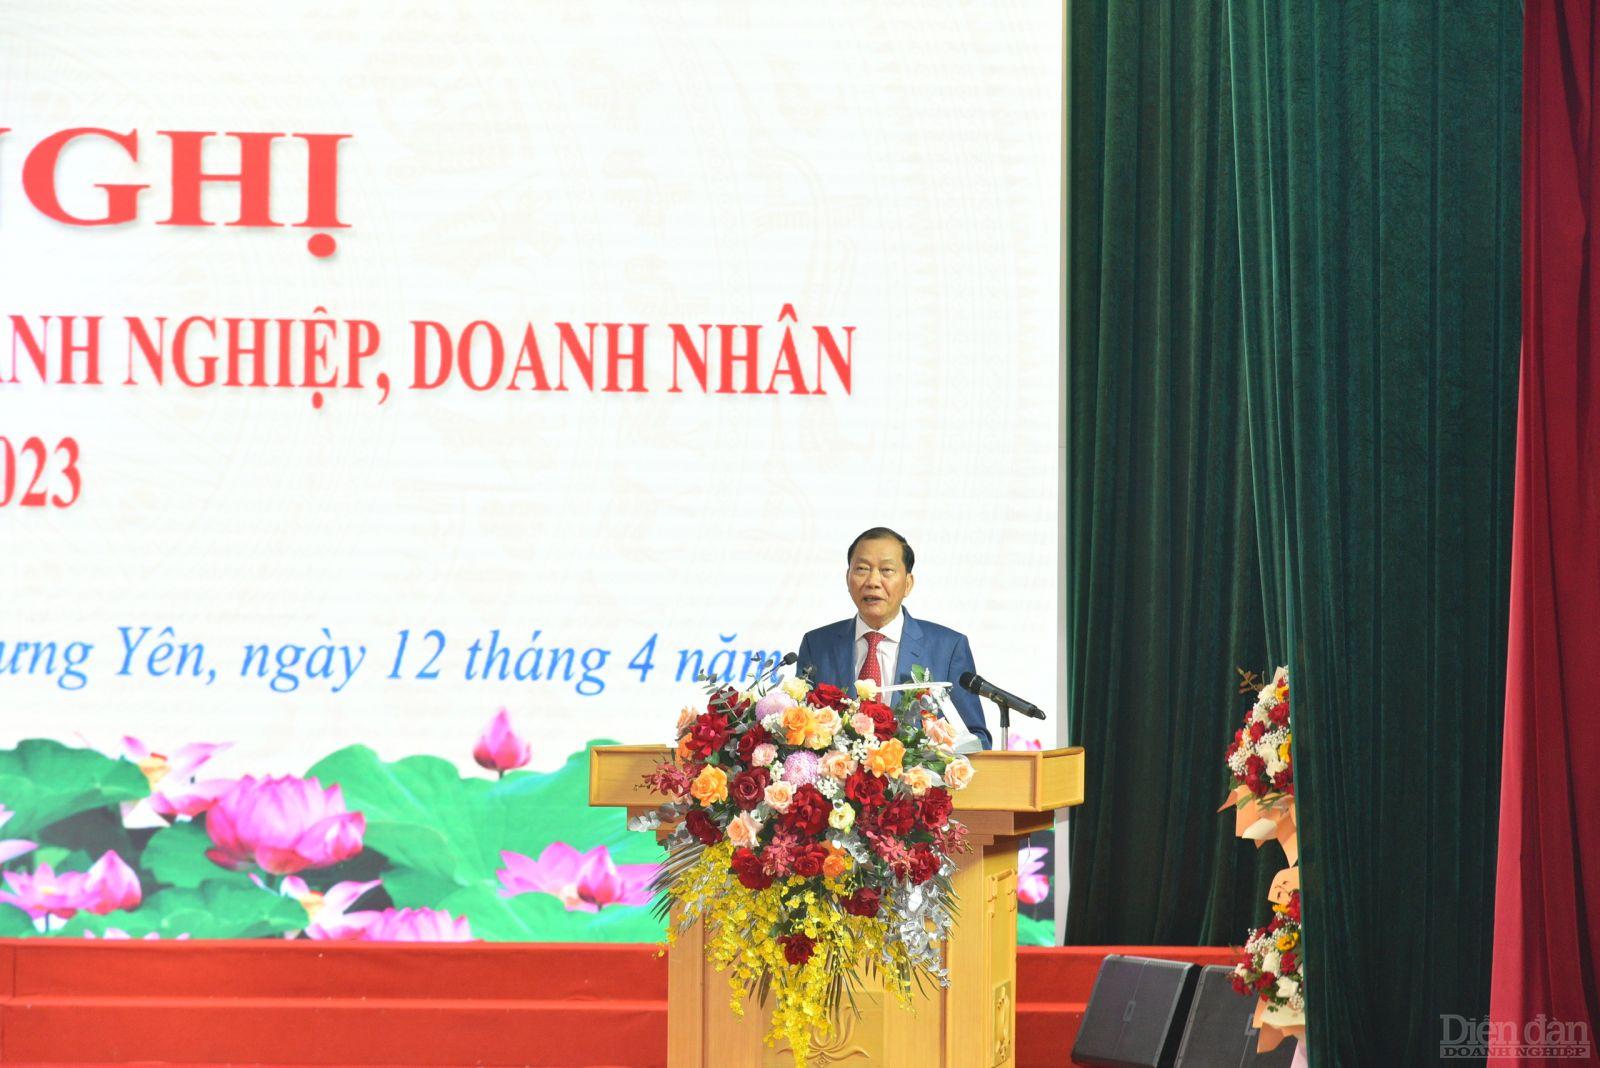 Phó Chủ tịch Liên đoàn Thương mại và Công nghiệp Việt Nam - Hoàng Quang Phòng